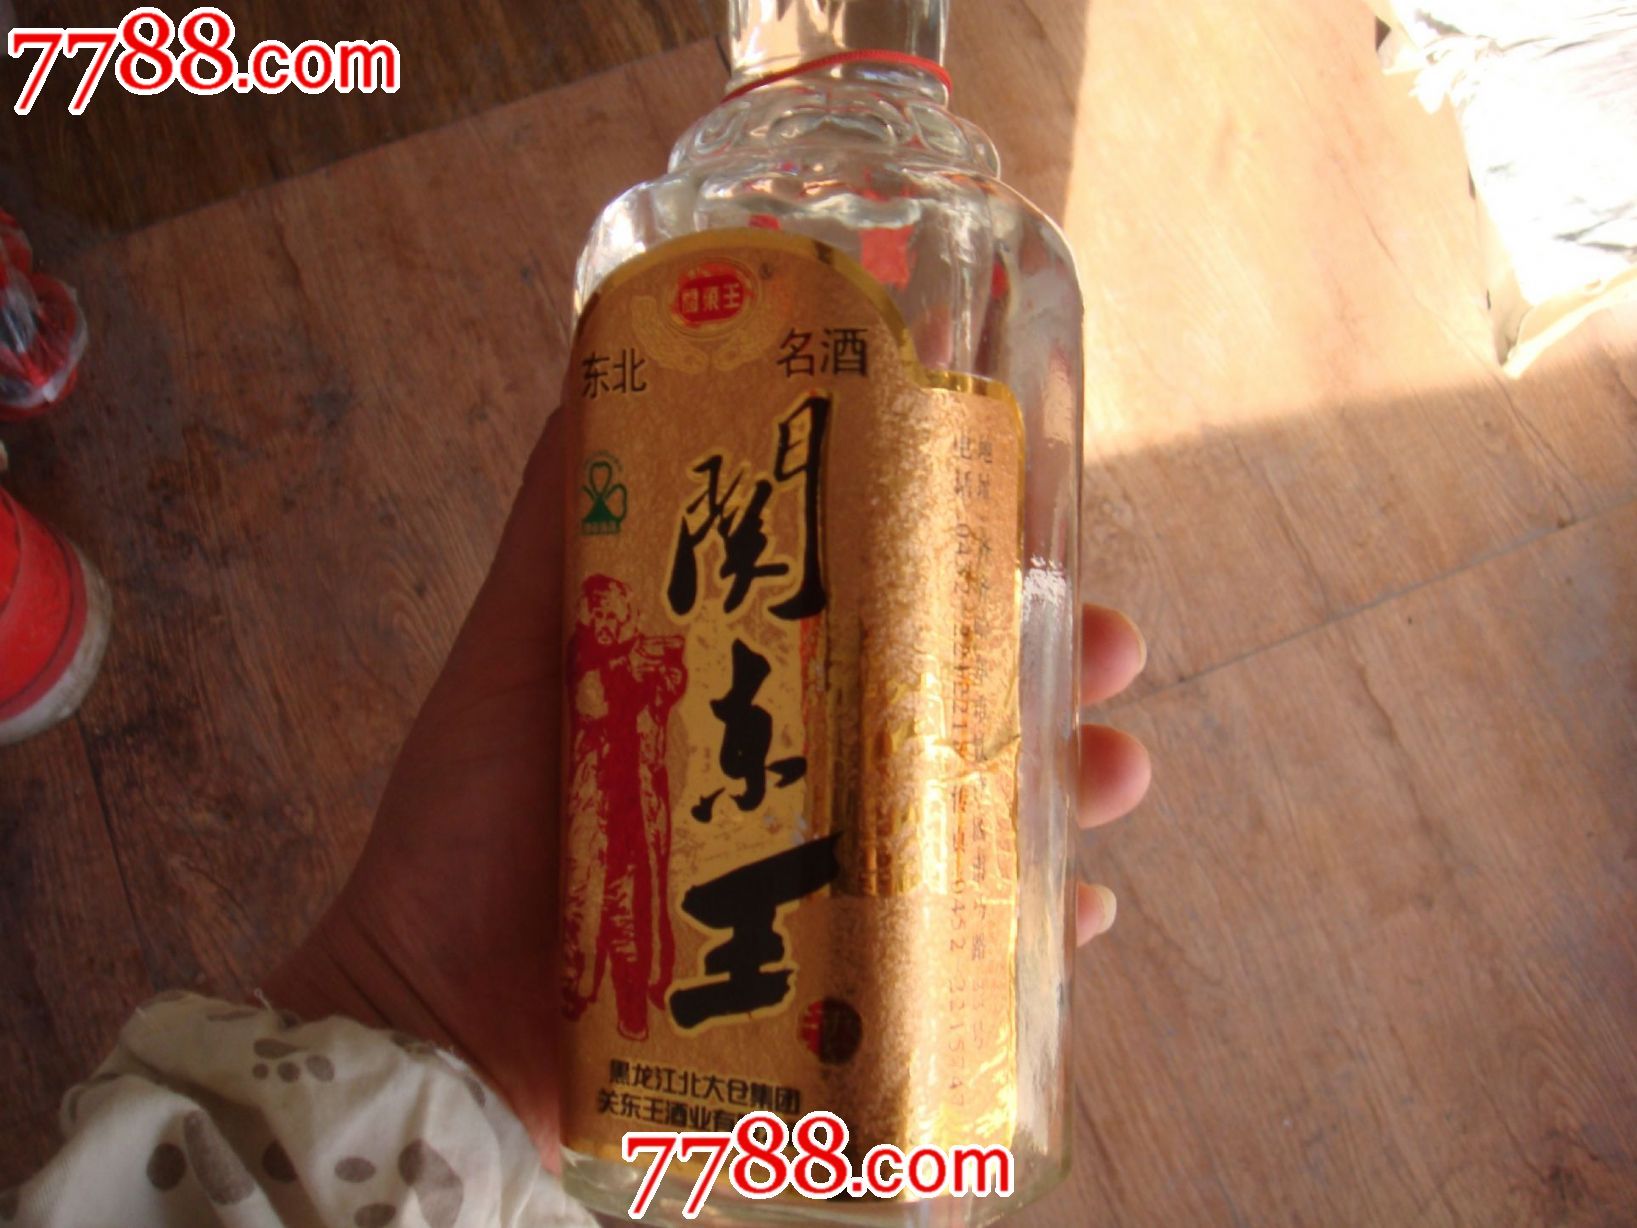 关东王-价格:1.0000元-se21890308-酒瓶-零售-7788收藏__中国收藏热线